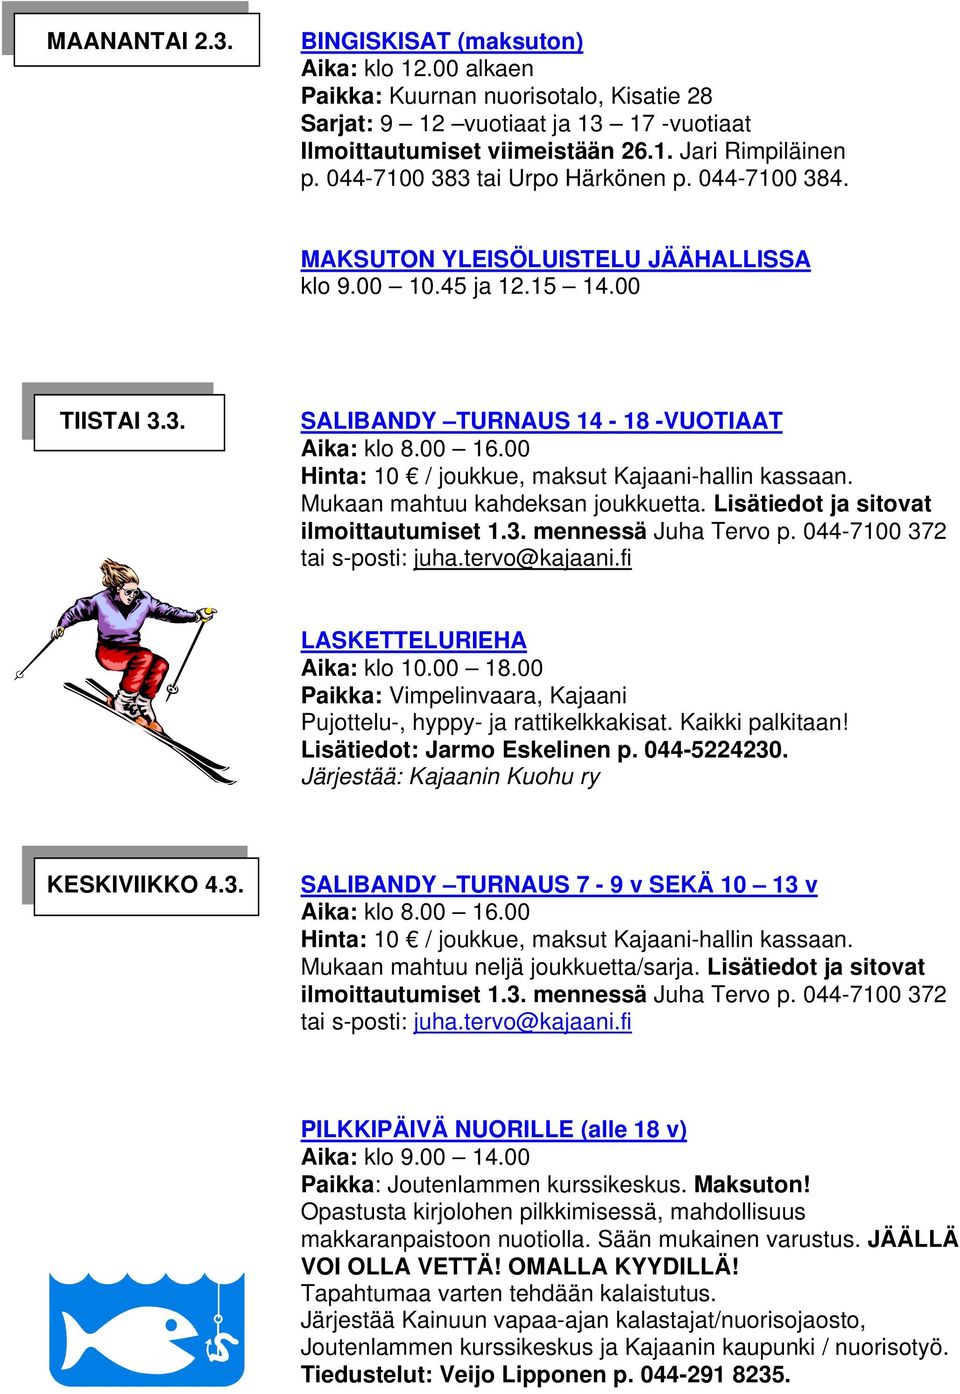 00 Hinta: 10 / joukkue, maksut Kajaani-hallin kassaan. Mukaan mahtuu kahdeksan joukkuetta. Lisätiedot ja sitovat ilmoittautumiset 1.3. mennessä Juha Tervo p. 044-7100 372 tai s-posti: juha.